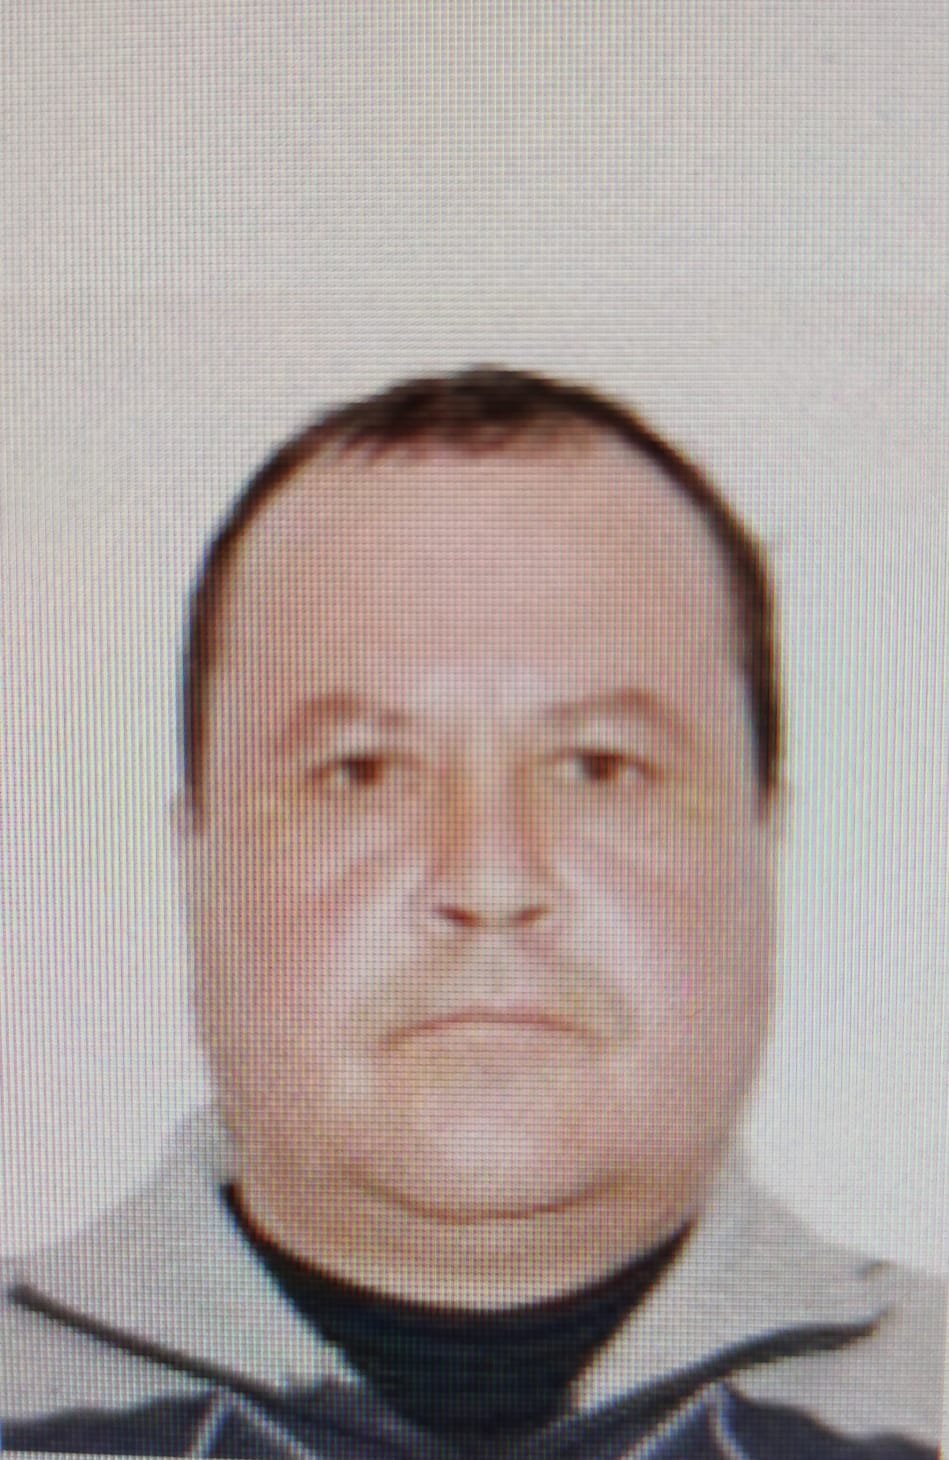  Bărbat dispărut din spital, în Iași. L-ați văzut? Anunțați polițiștii (UPDATE)